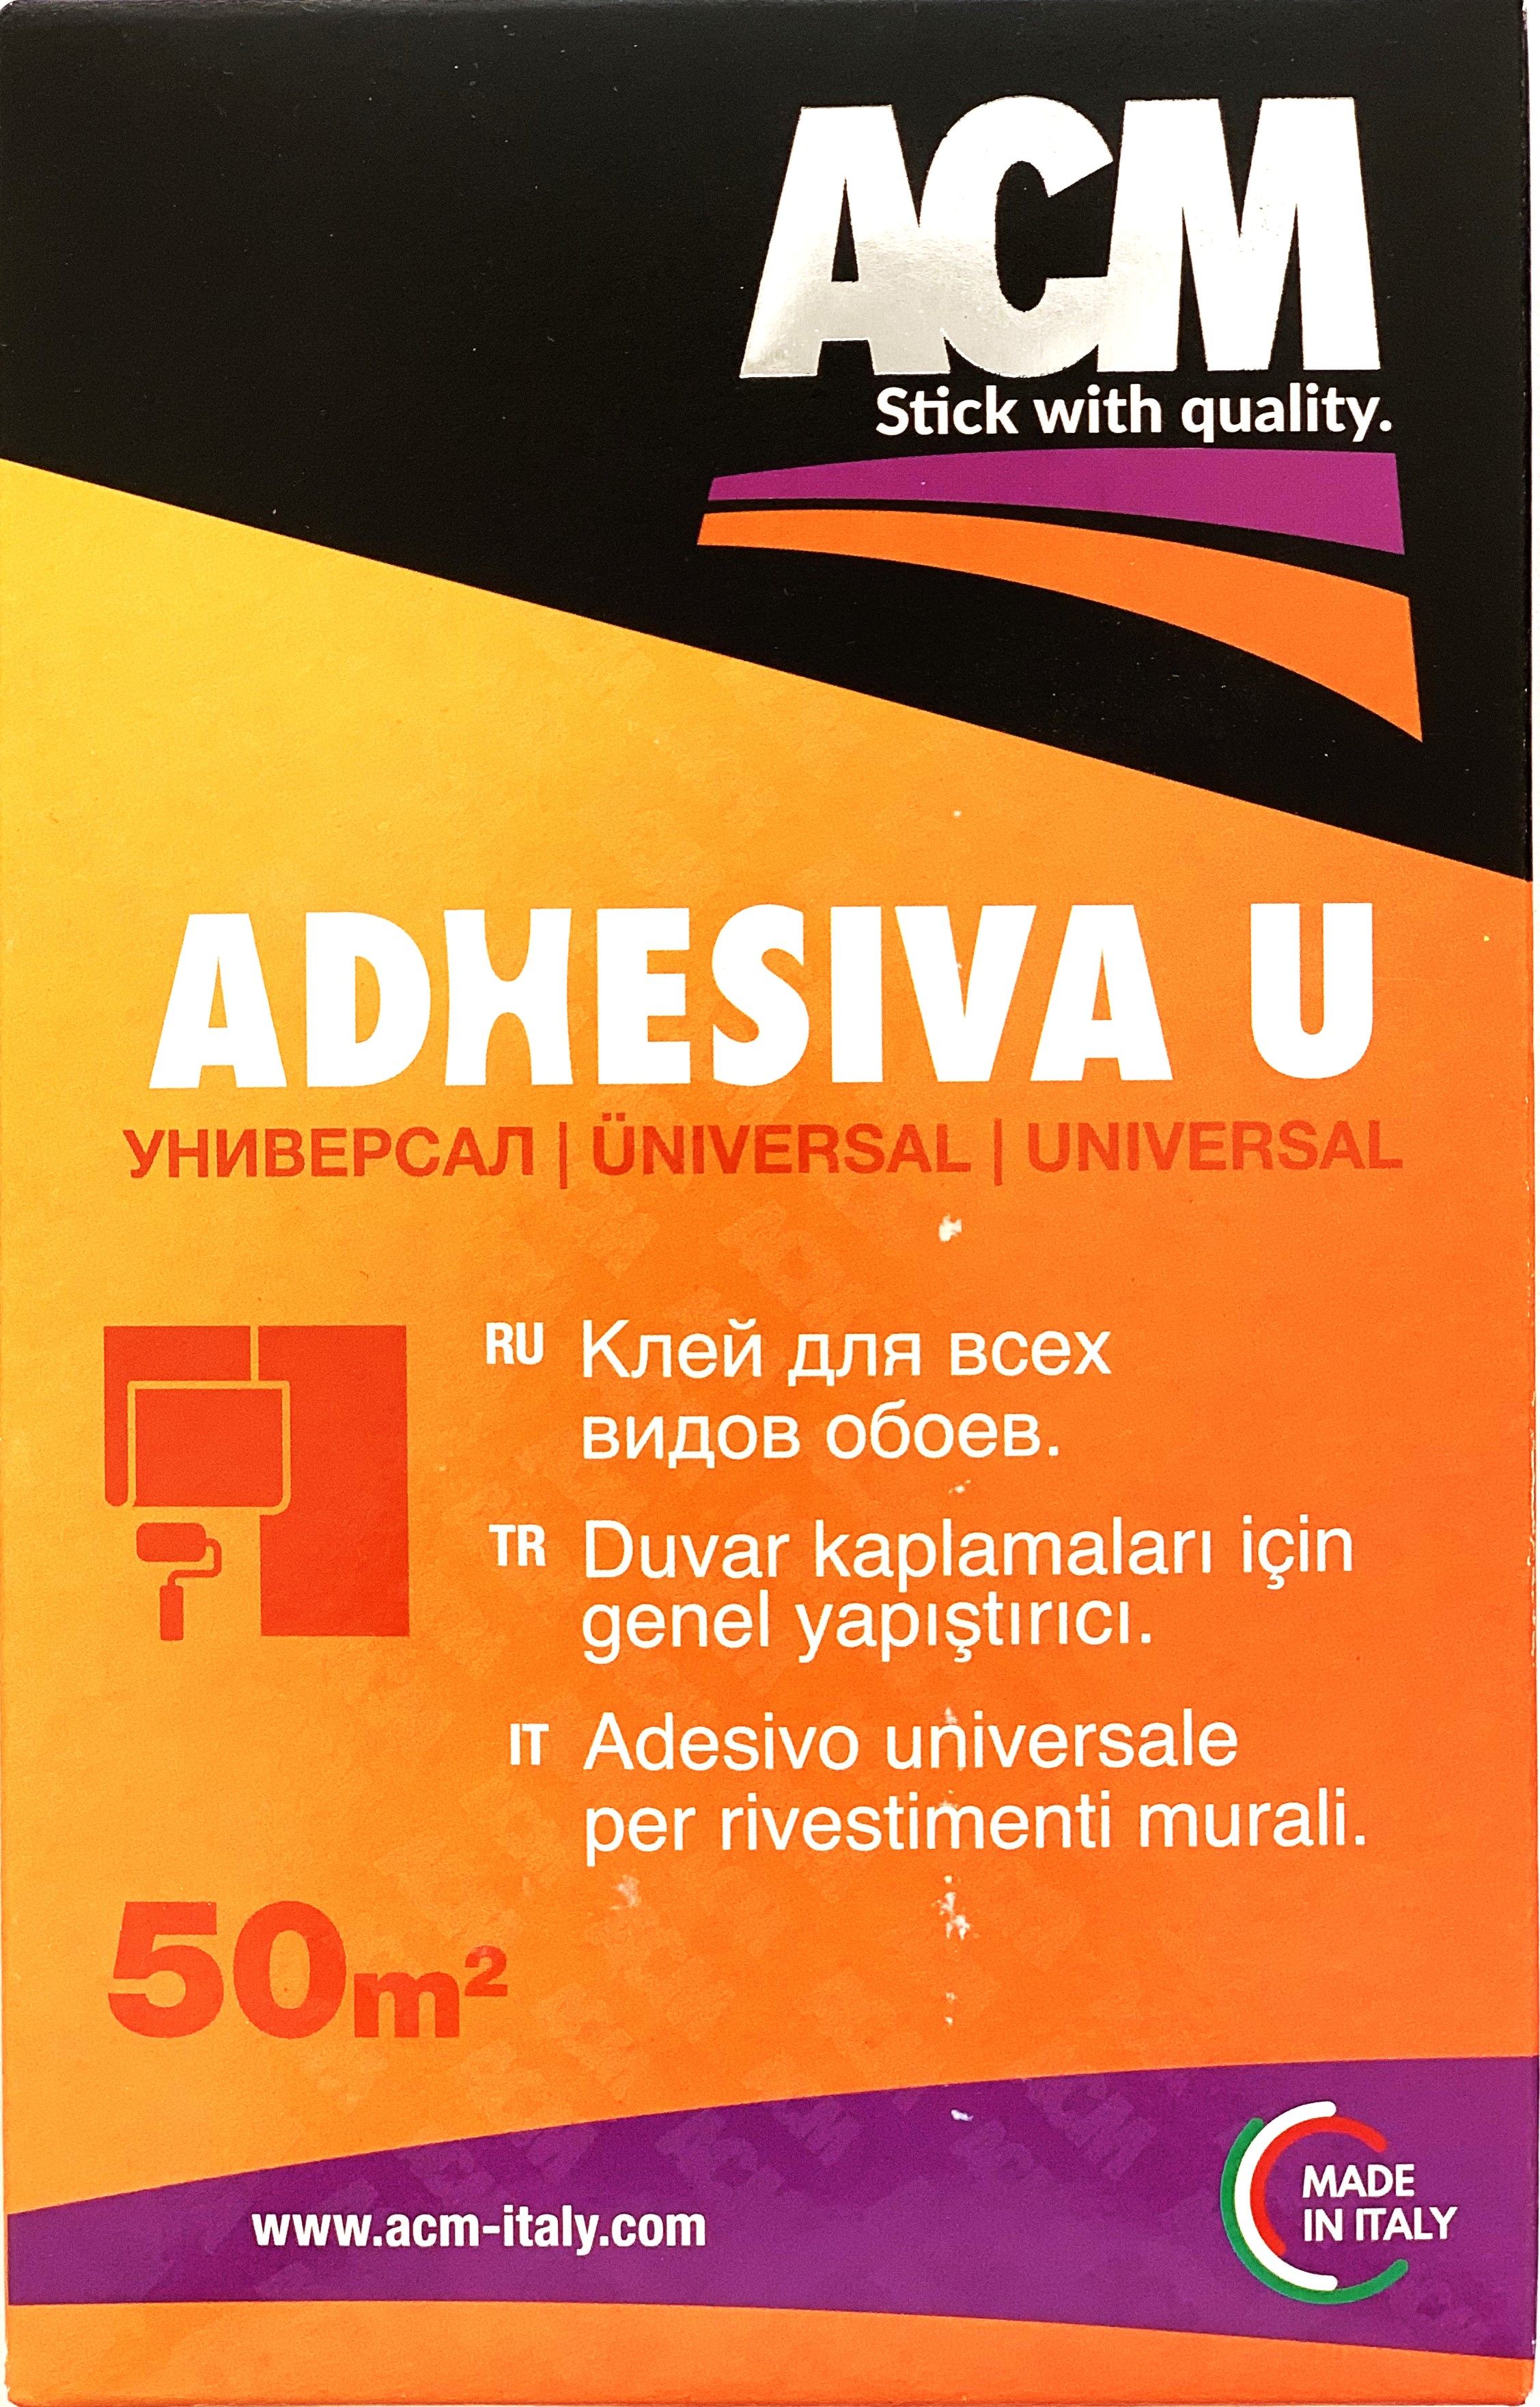 Adhesiva U 250 г